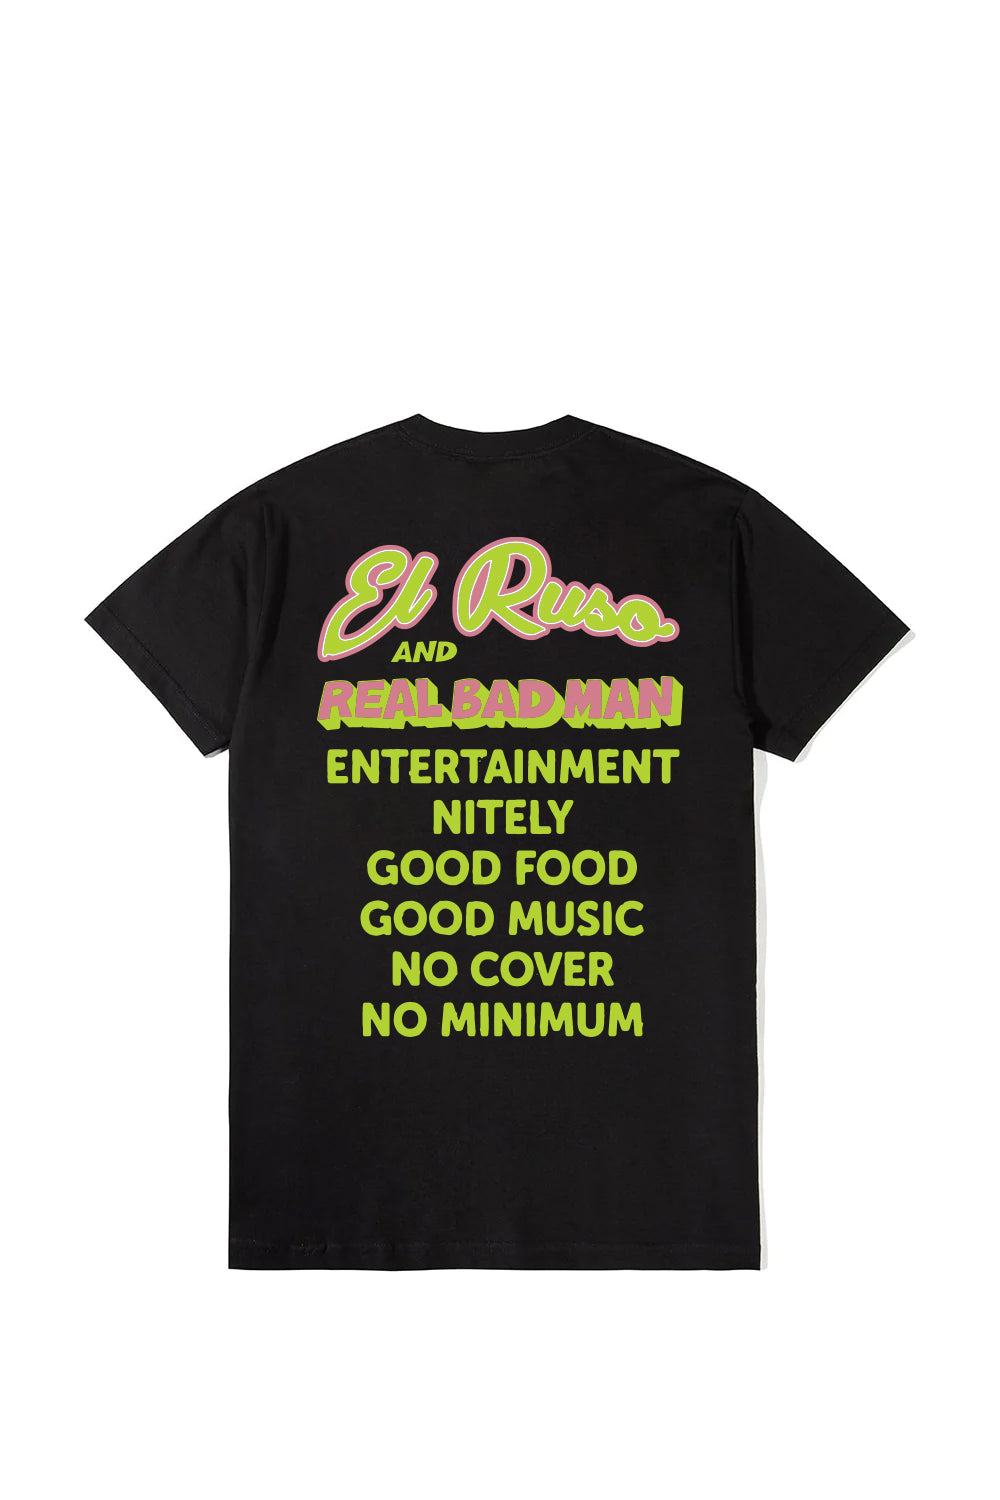 Real Bad Man X El Ruso T-Shirt